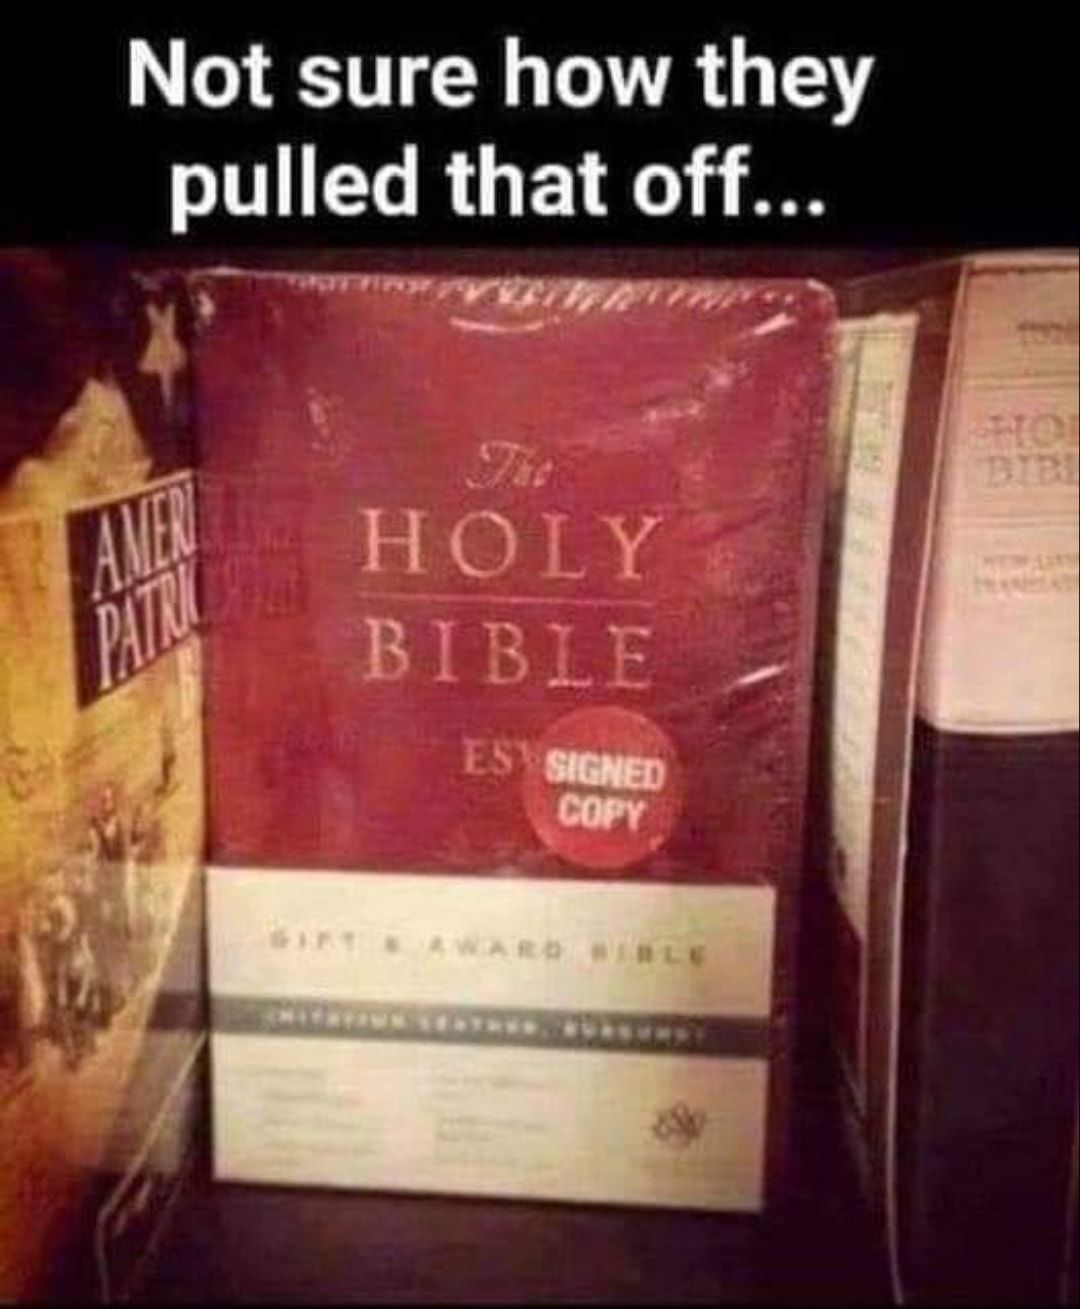 Een gesigneerd exemplaar van de bijbel